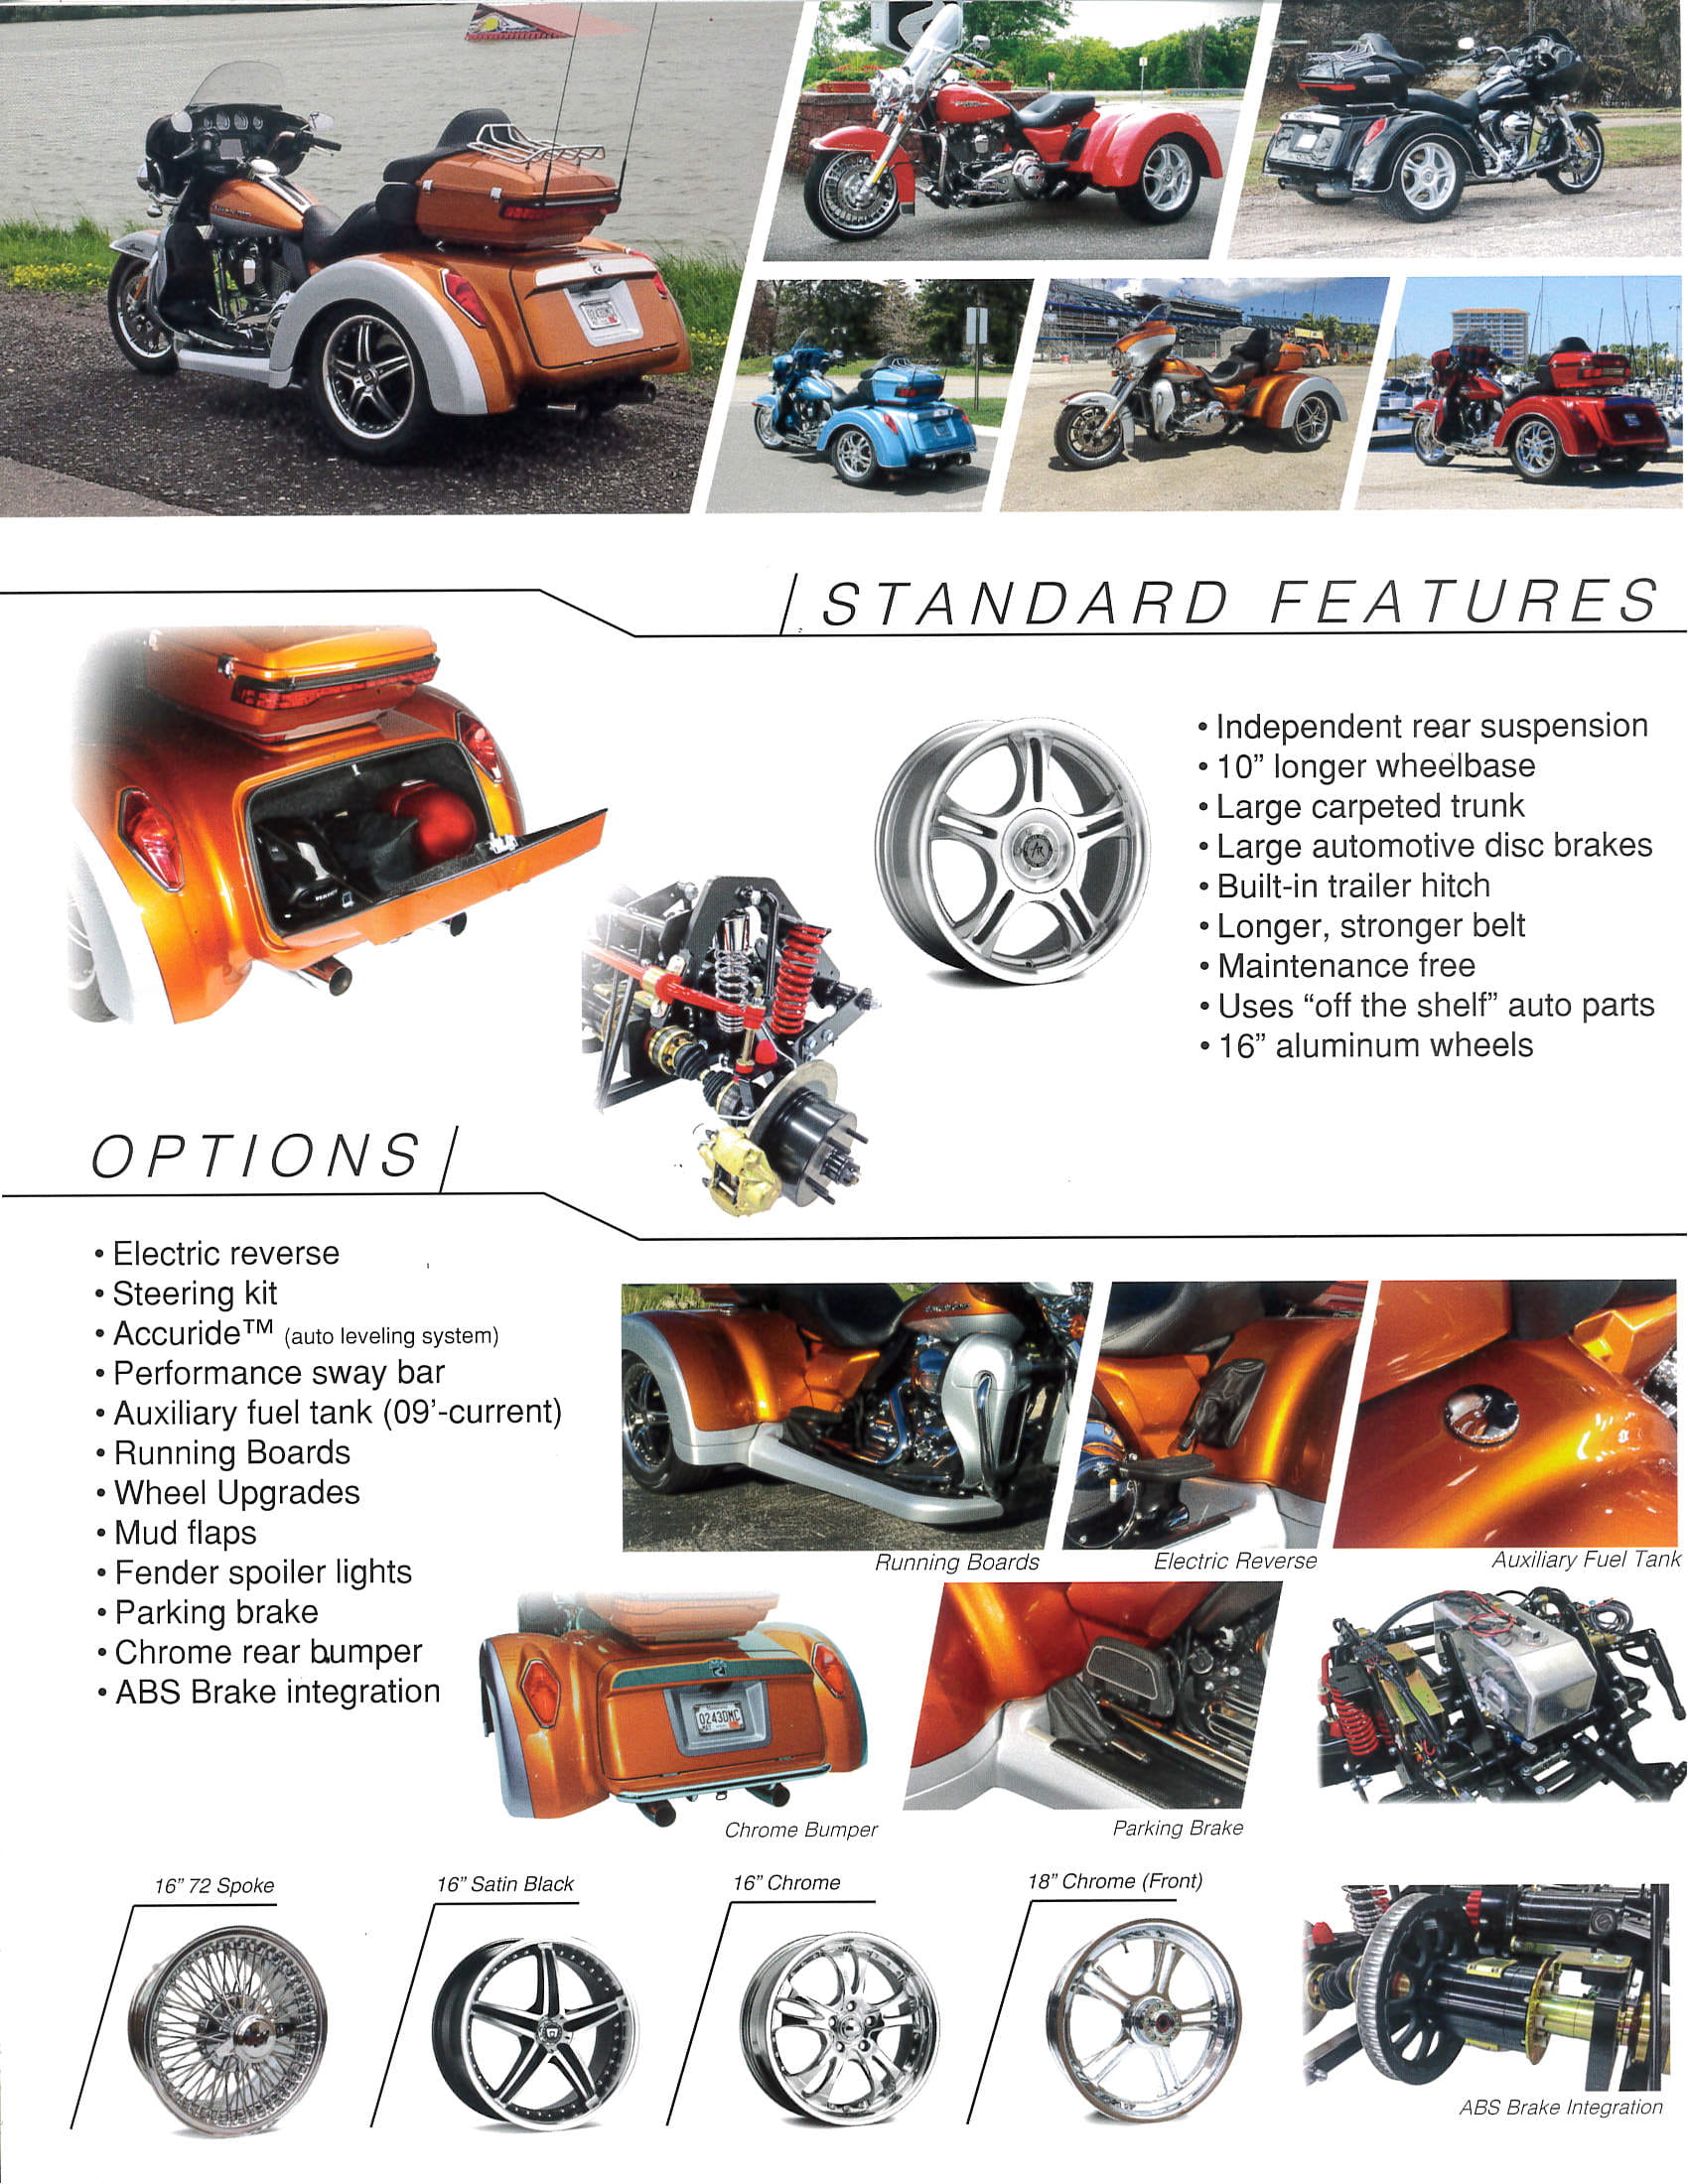 Hdtr The Best Independent Suspension Trike Kit For Harley Davidson Touring Models Unb Customs Trike Custom Shop